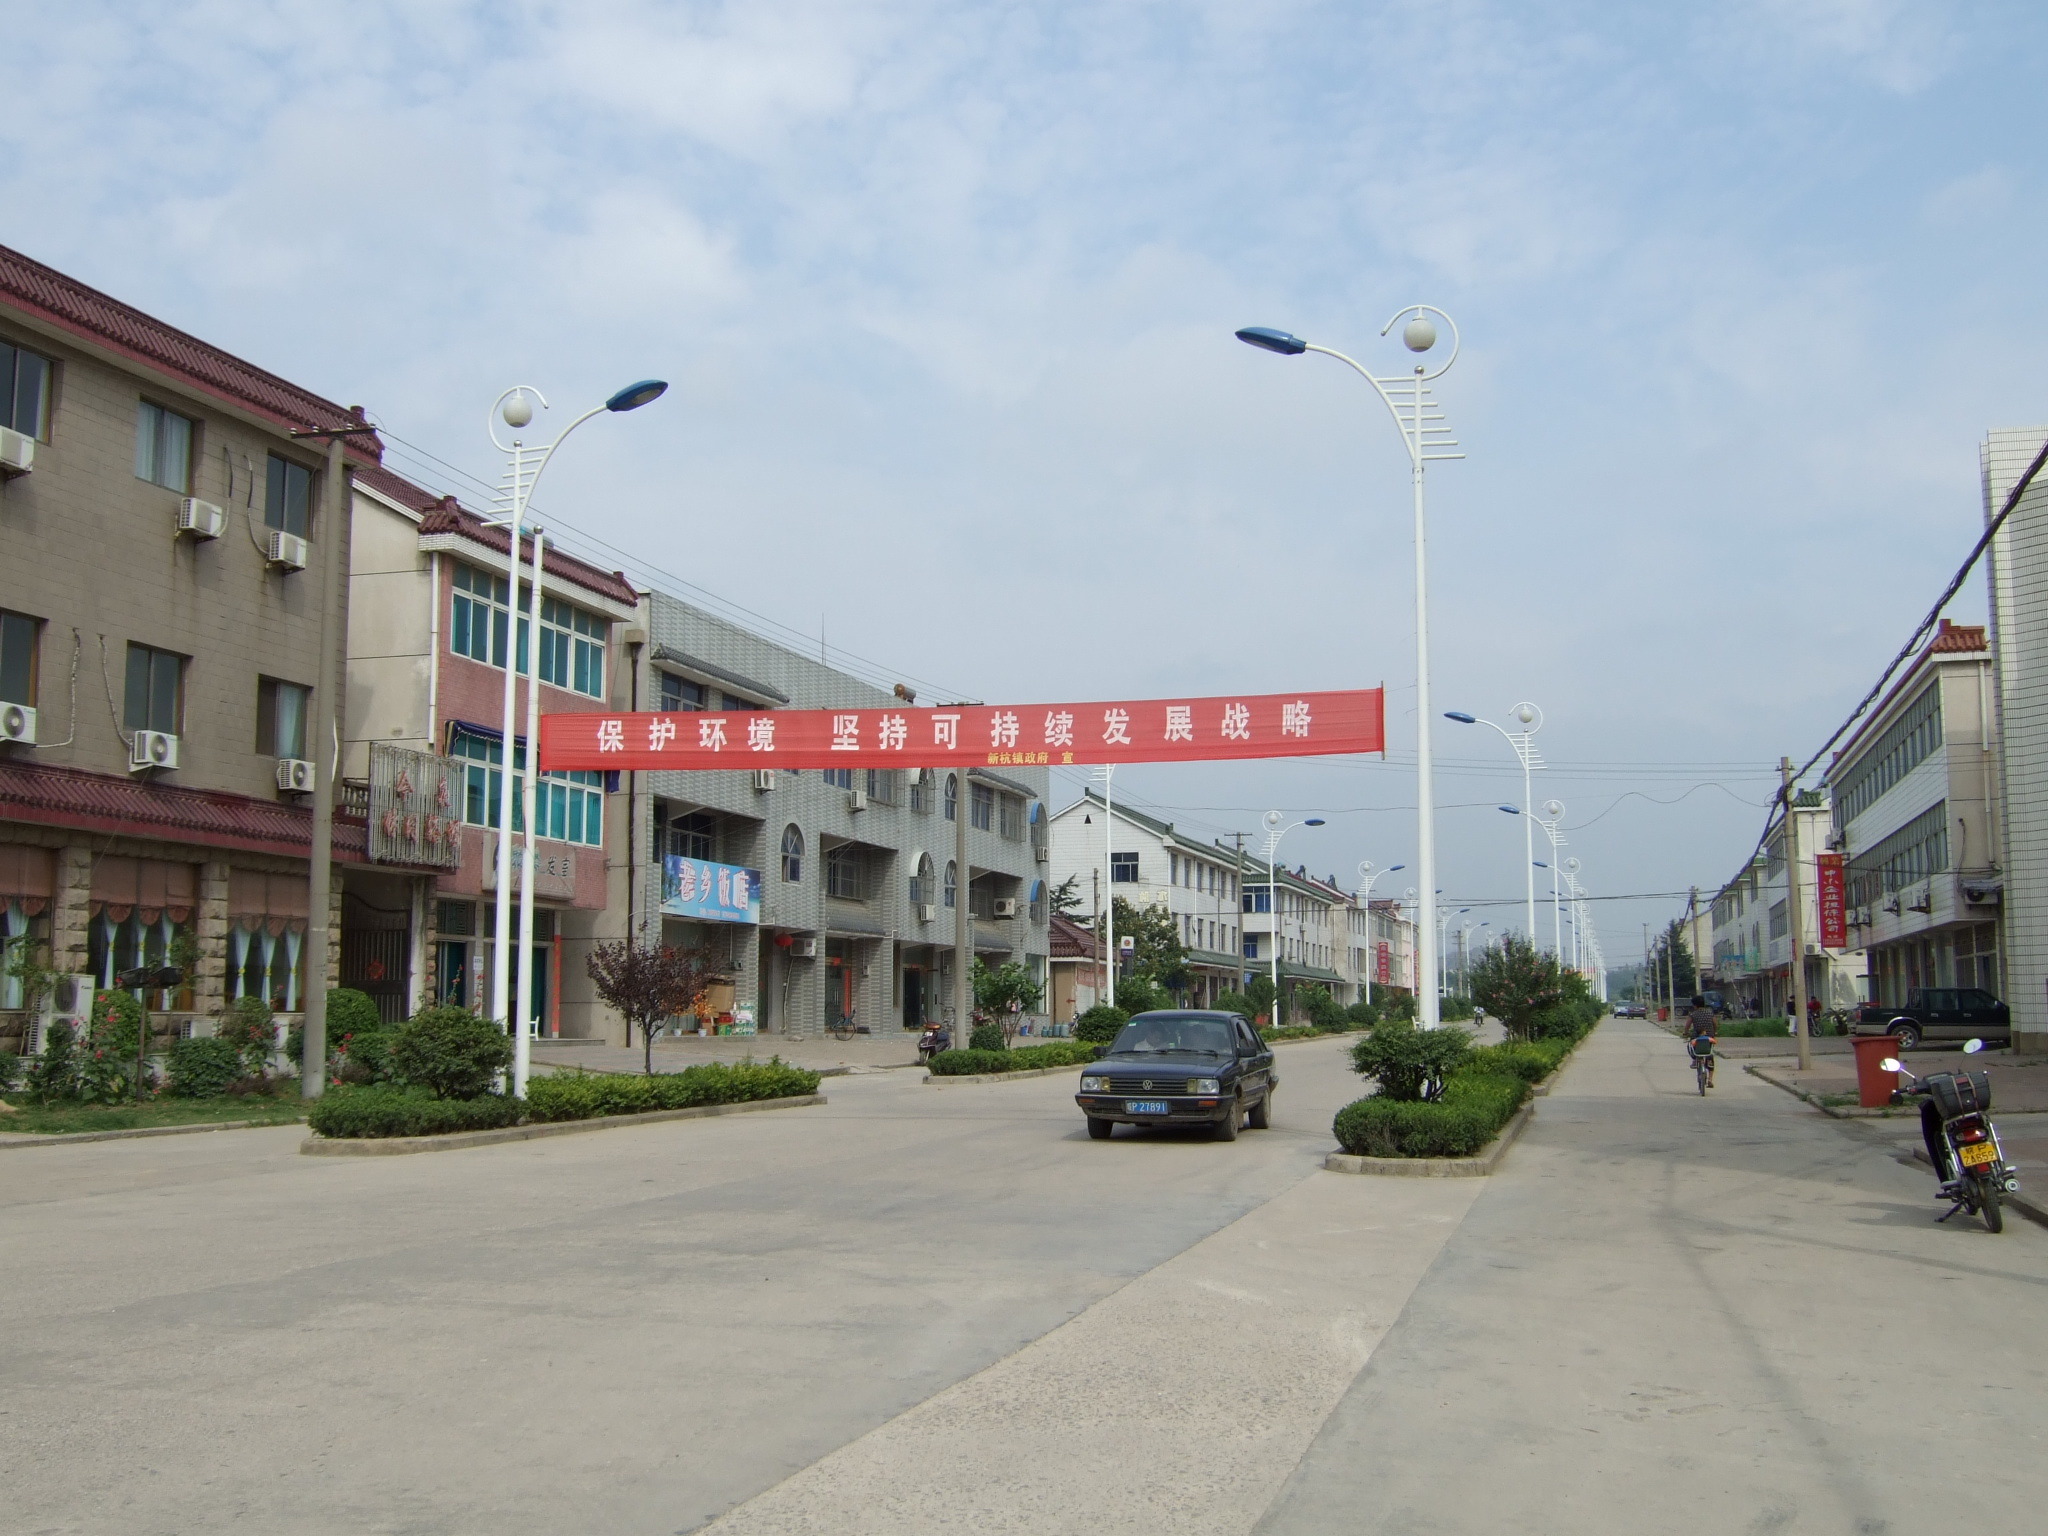 地理位置 新杭镇位于安徽省广德县东南边缘,是苏浙皖三省的交界点.